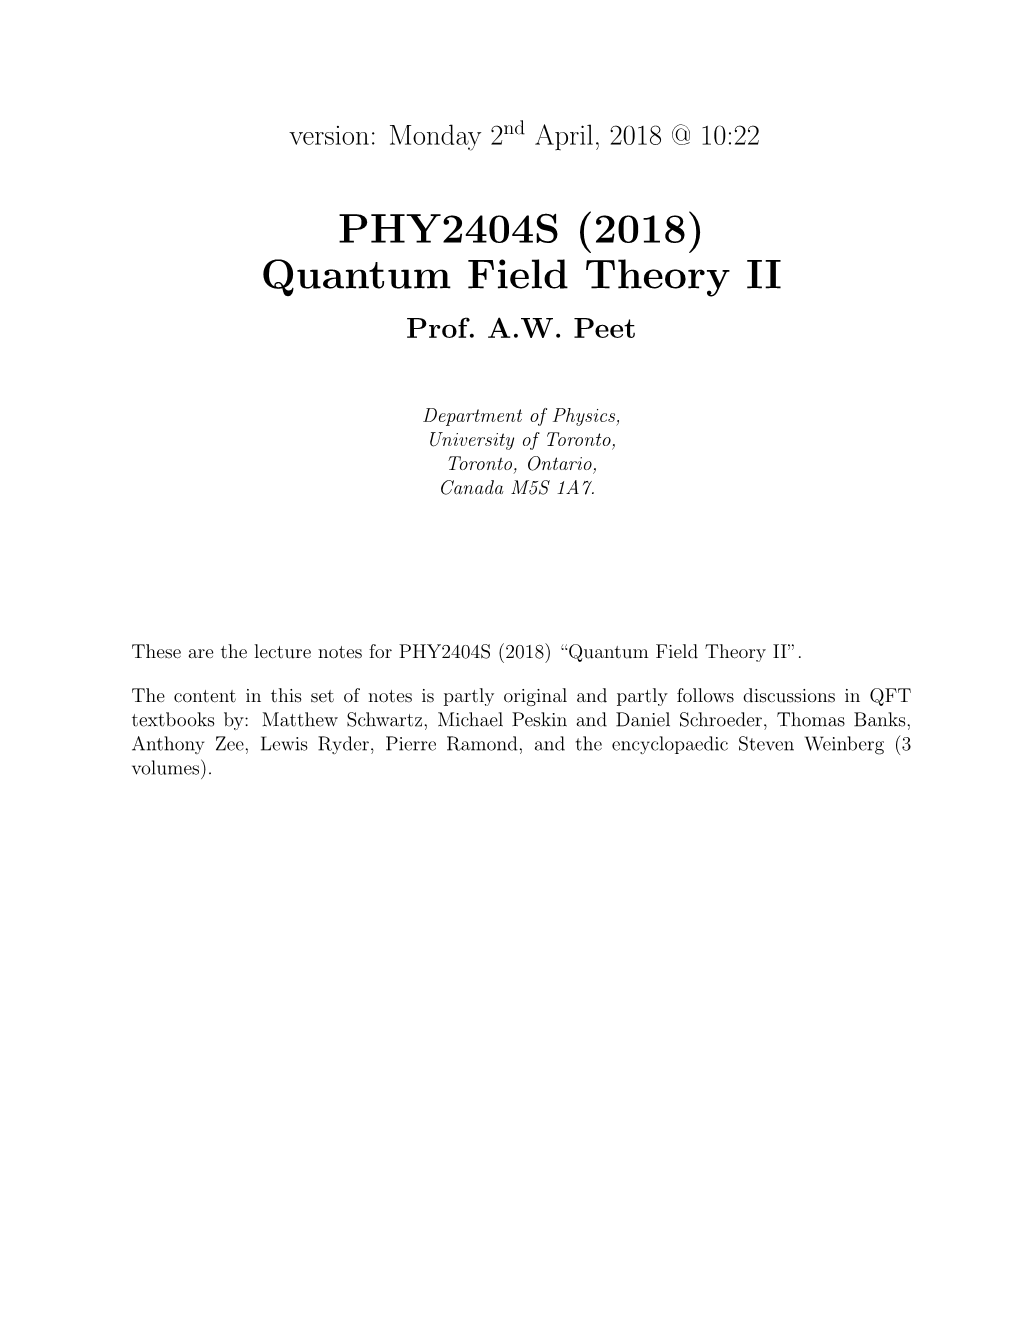 Quantum Field Theory II Prof